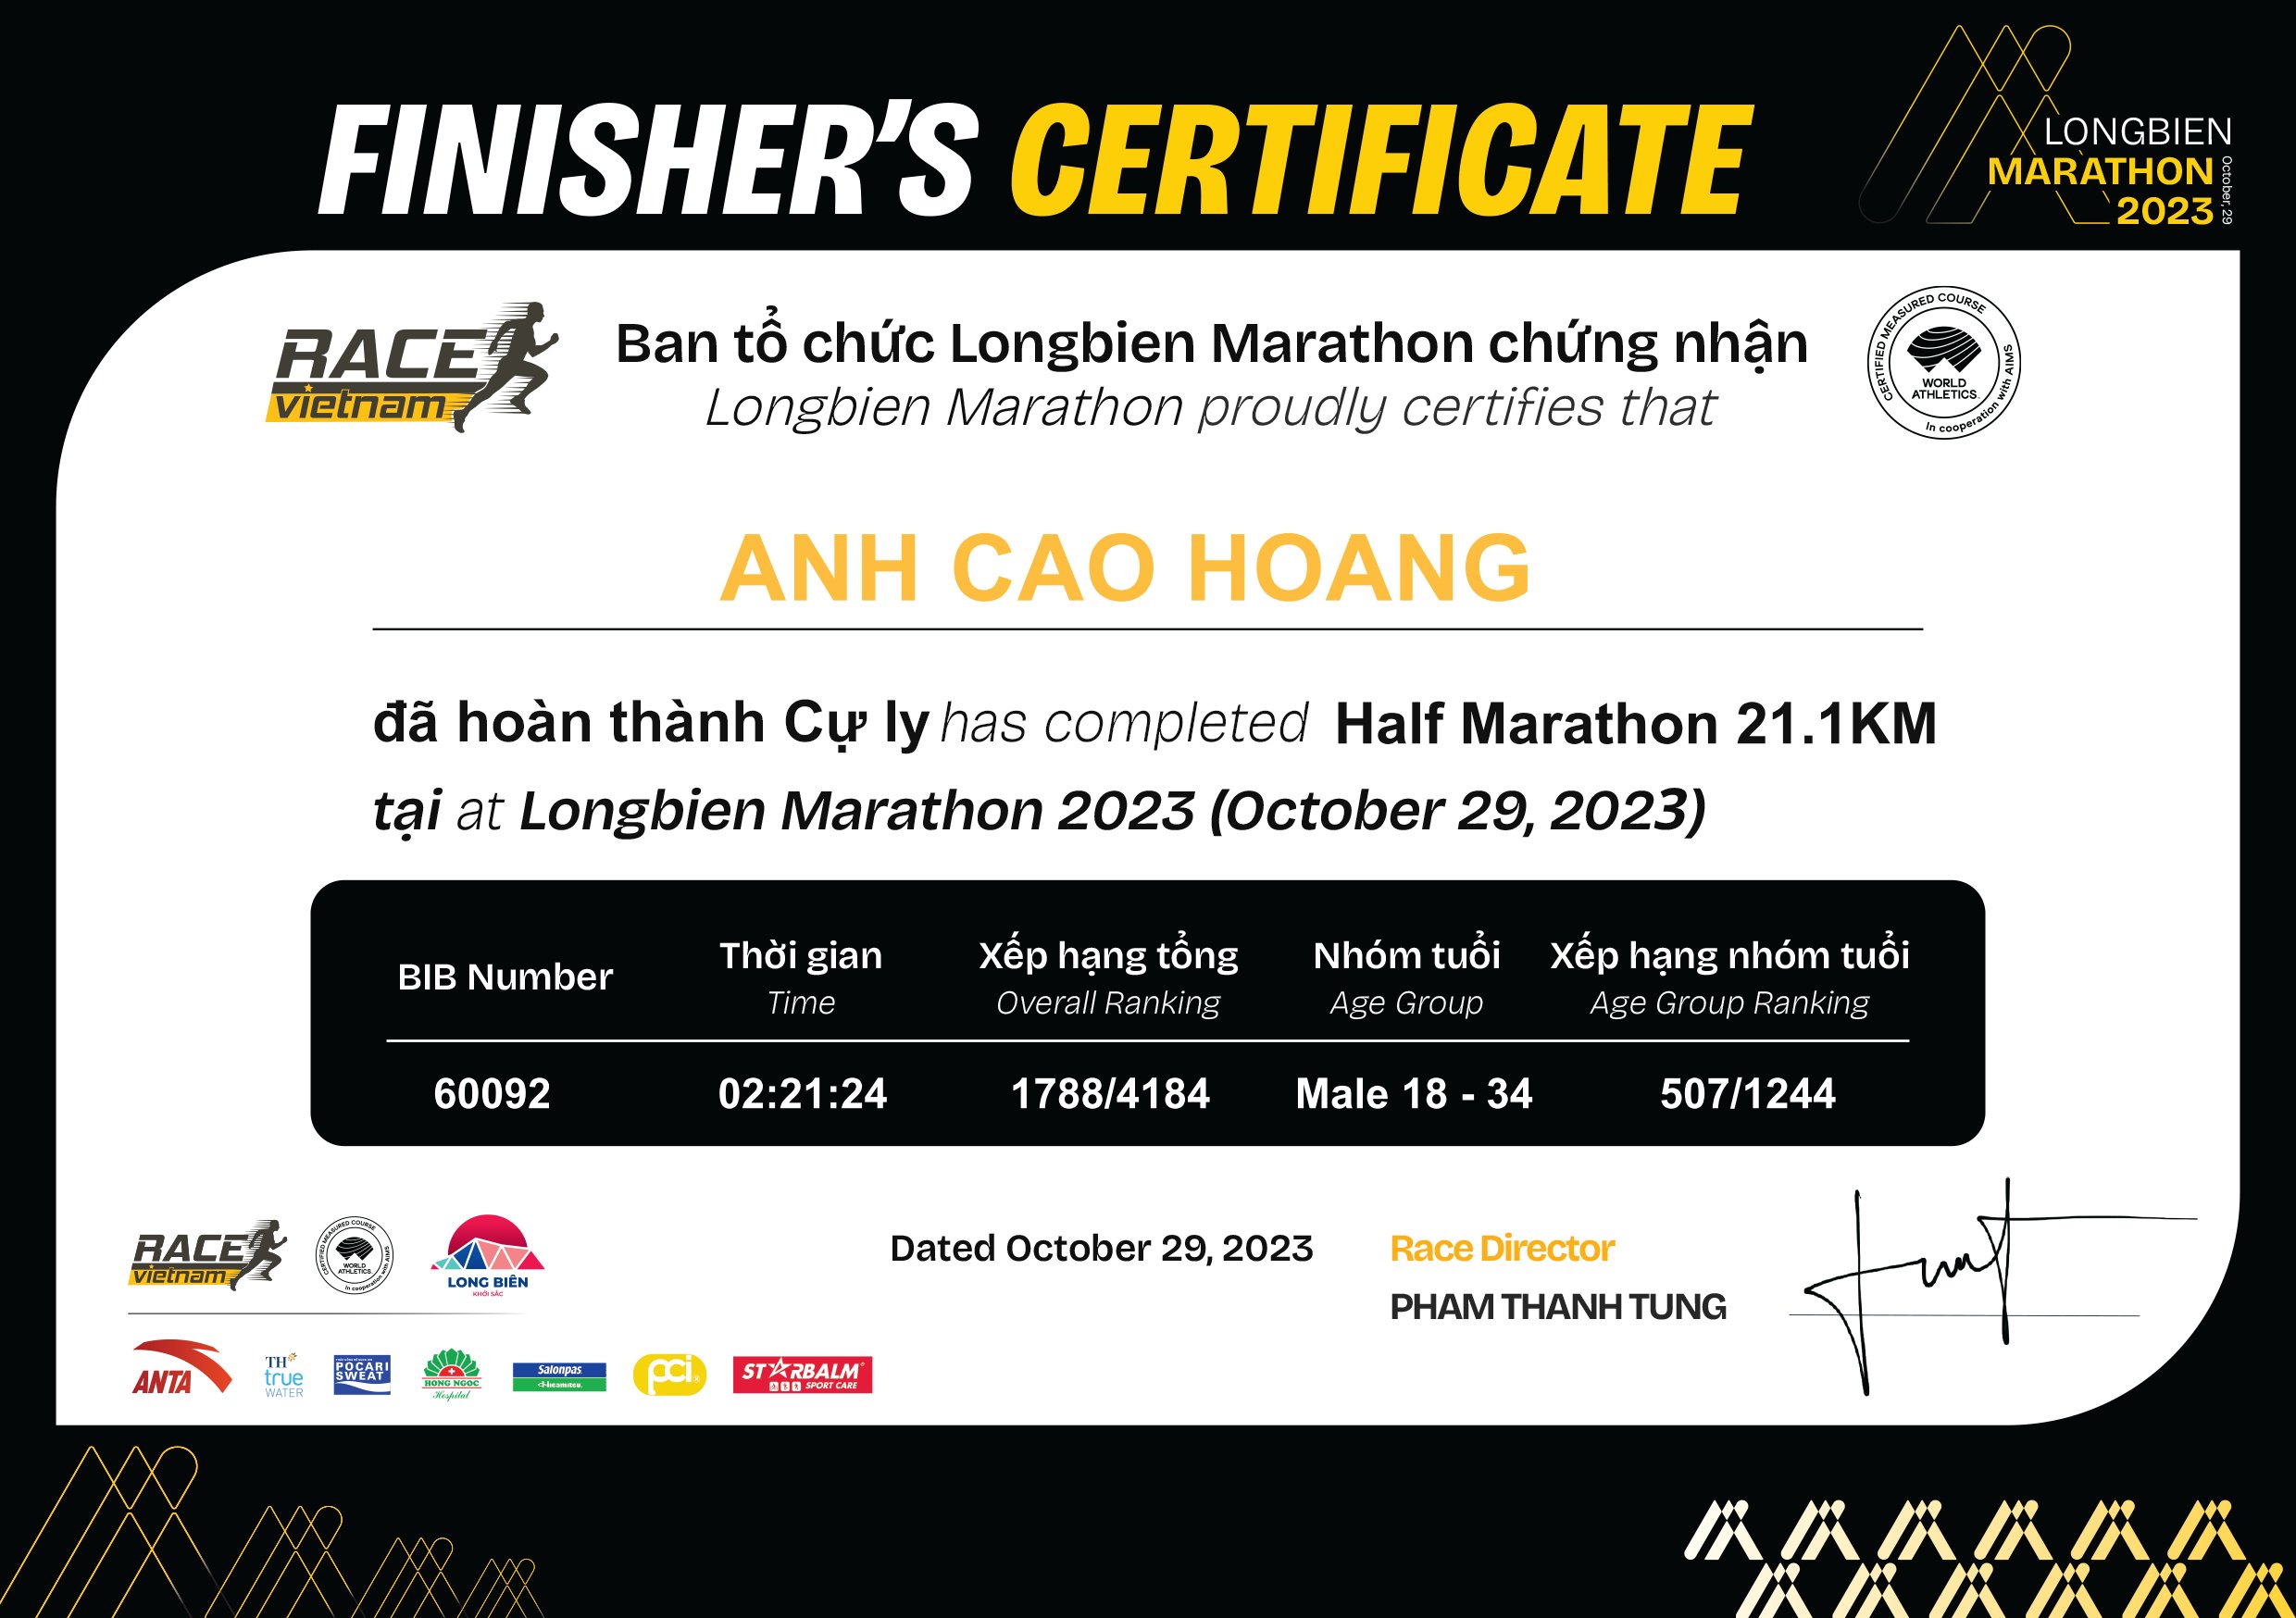 60092 - Anh Cao Hoang